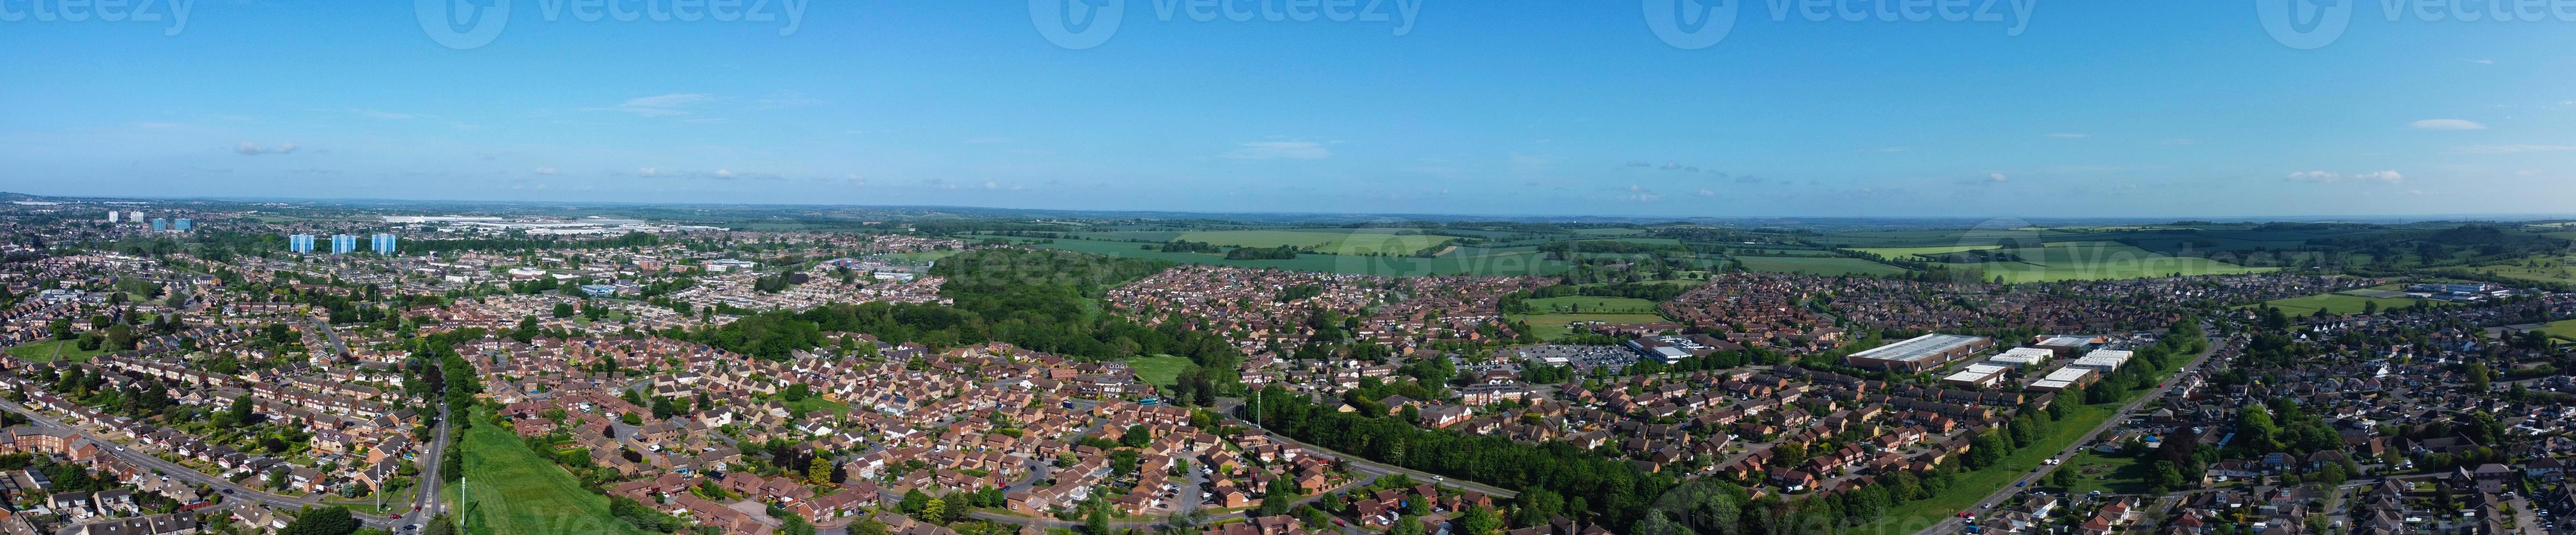 le riprese panoramiche aeree più belle e la vista dall'alto dell'Inghilterra, Gran Bretagna, foto